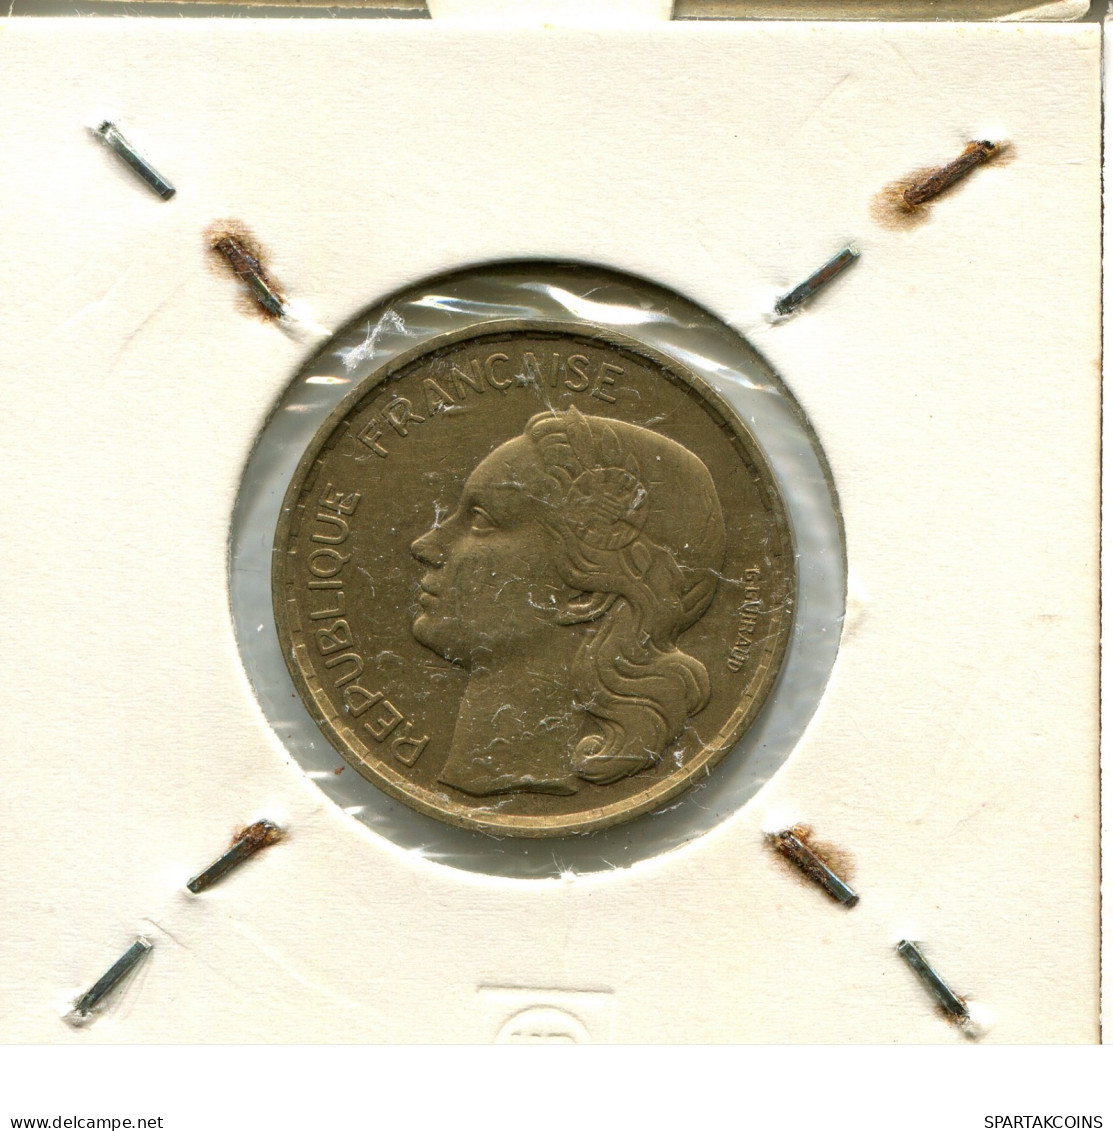 20 FRANCS 1951 B FRANKREICH FRANCE Französisch Münze #AW440.D.A - 20 Francs